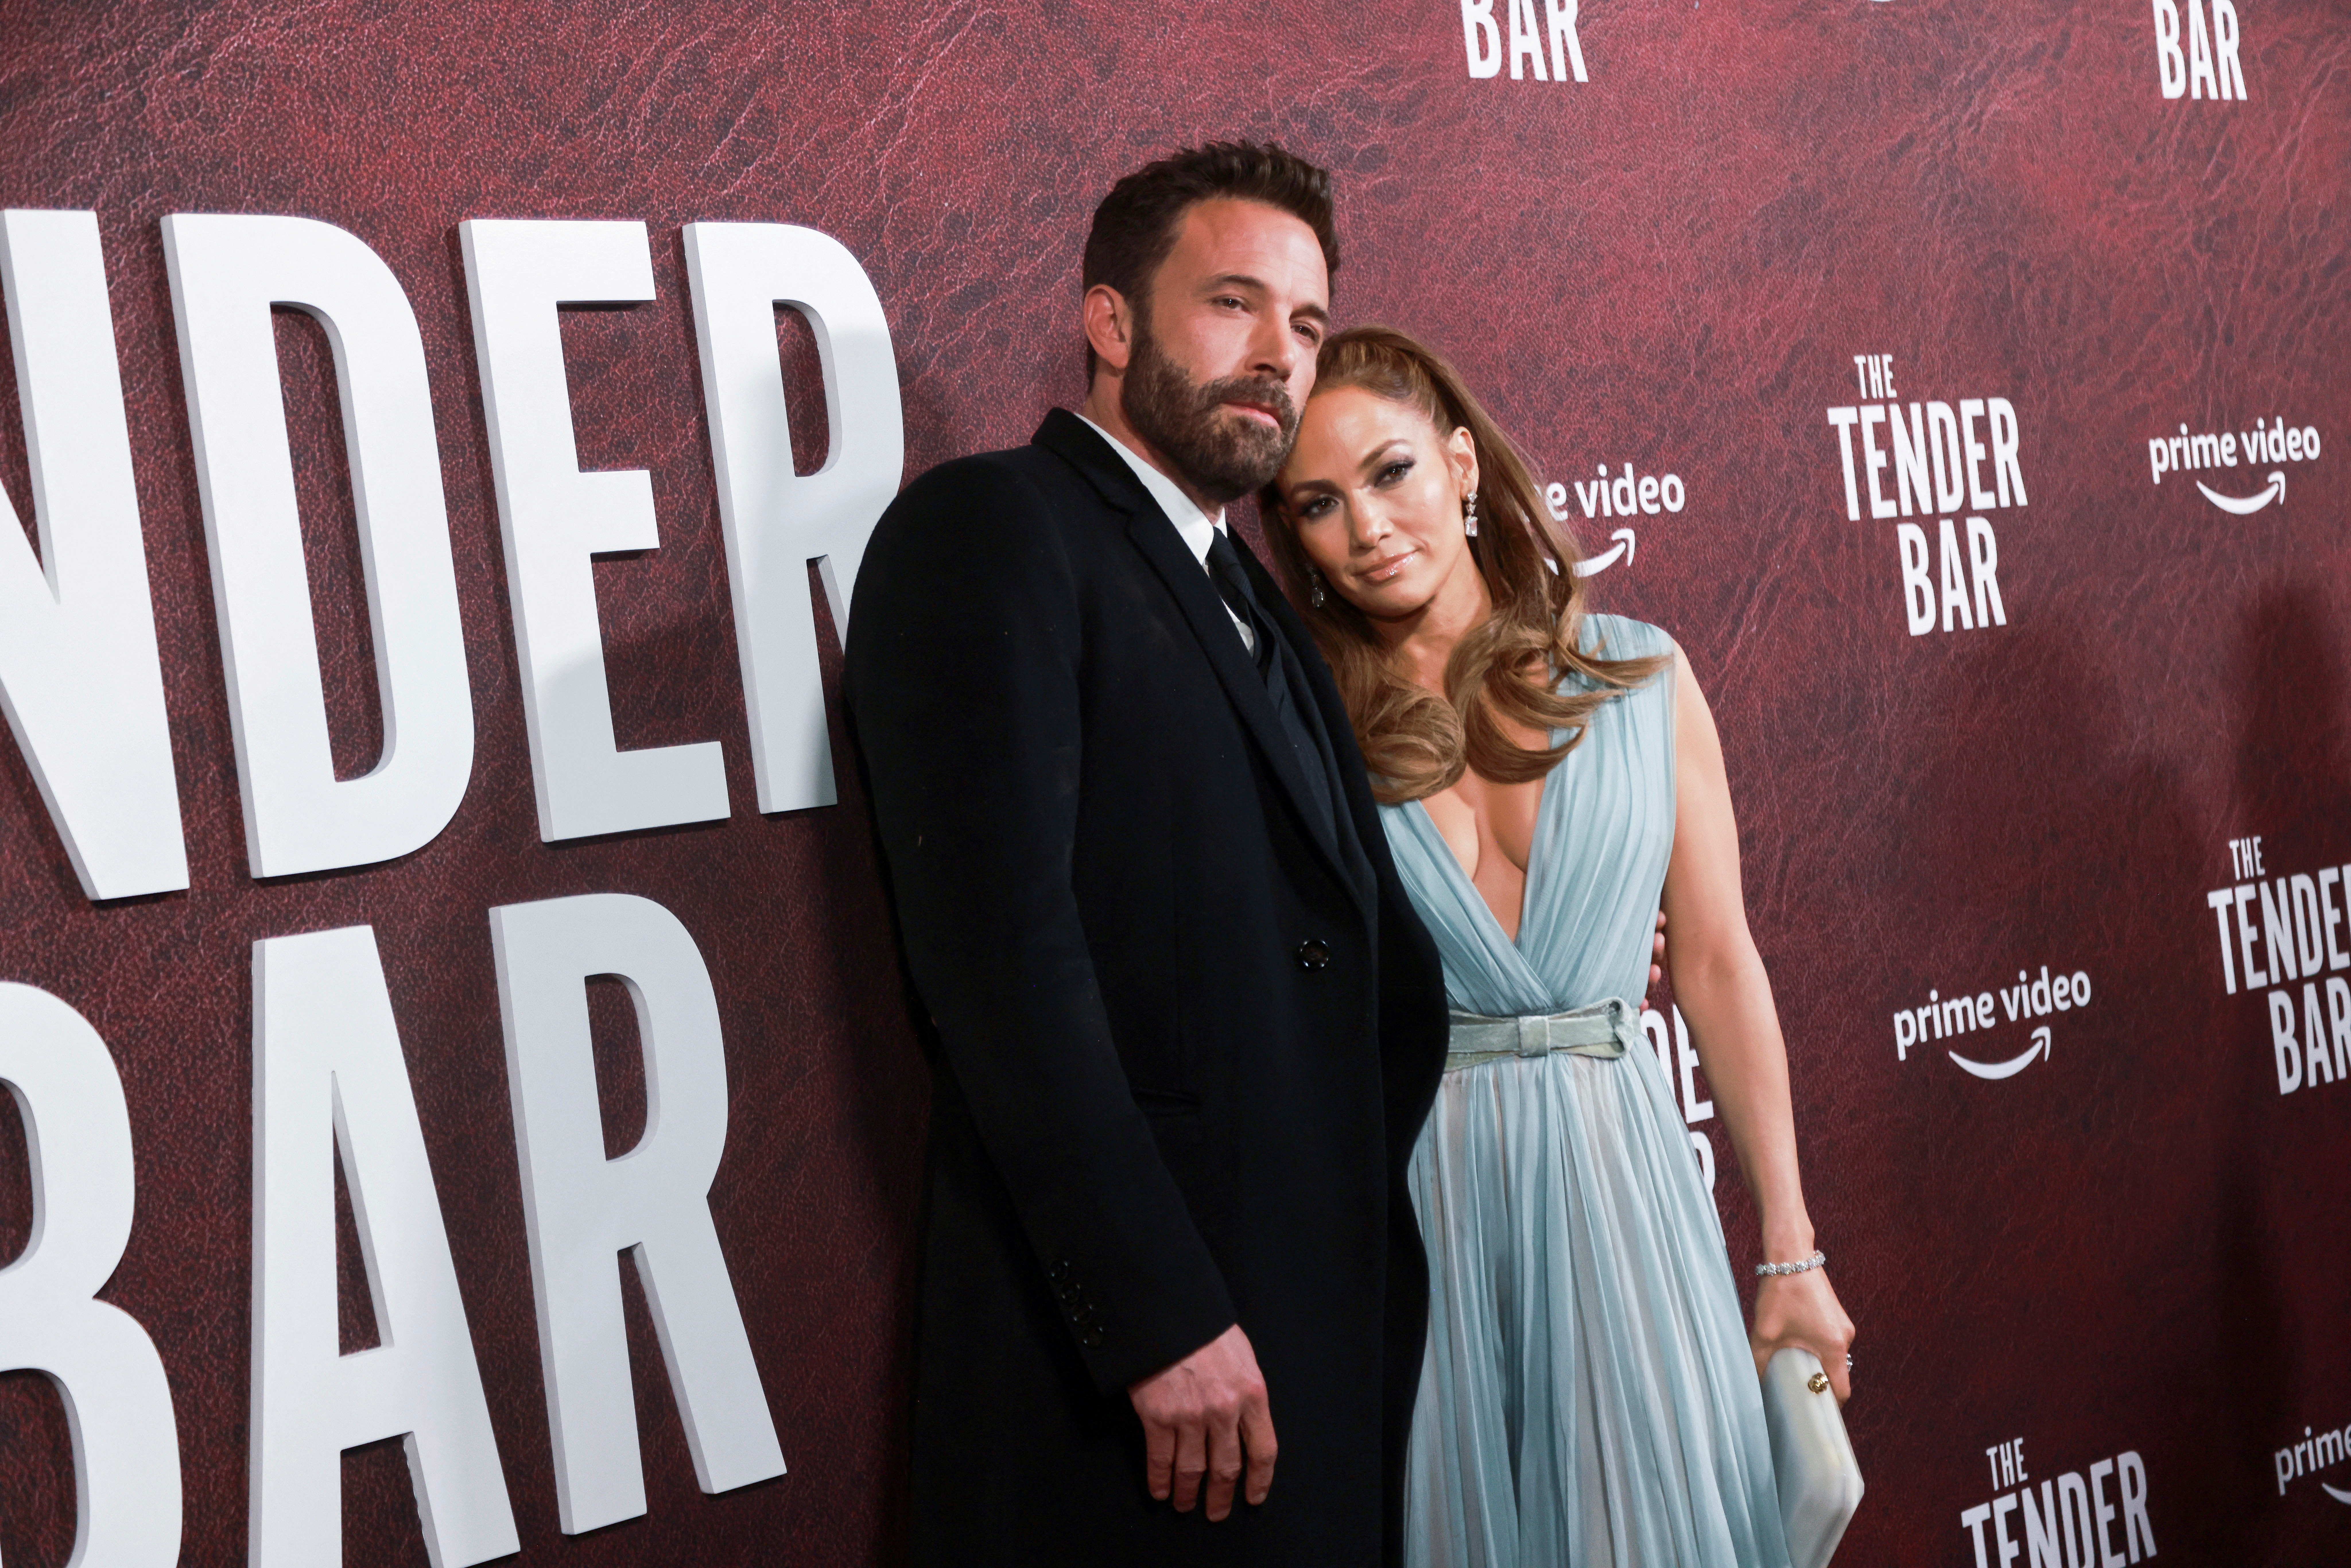  Ben Affleck y Jennifer Lopez en el estreno de la película  "The Tender Bar" (REUTERS/Aude Guerrucci/File Photo)